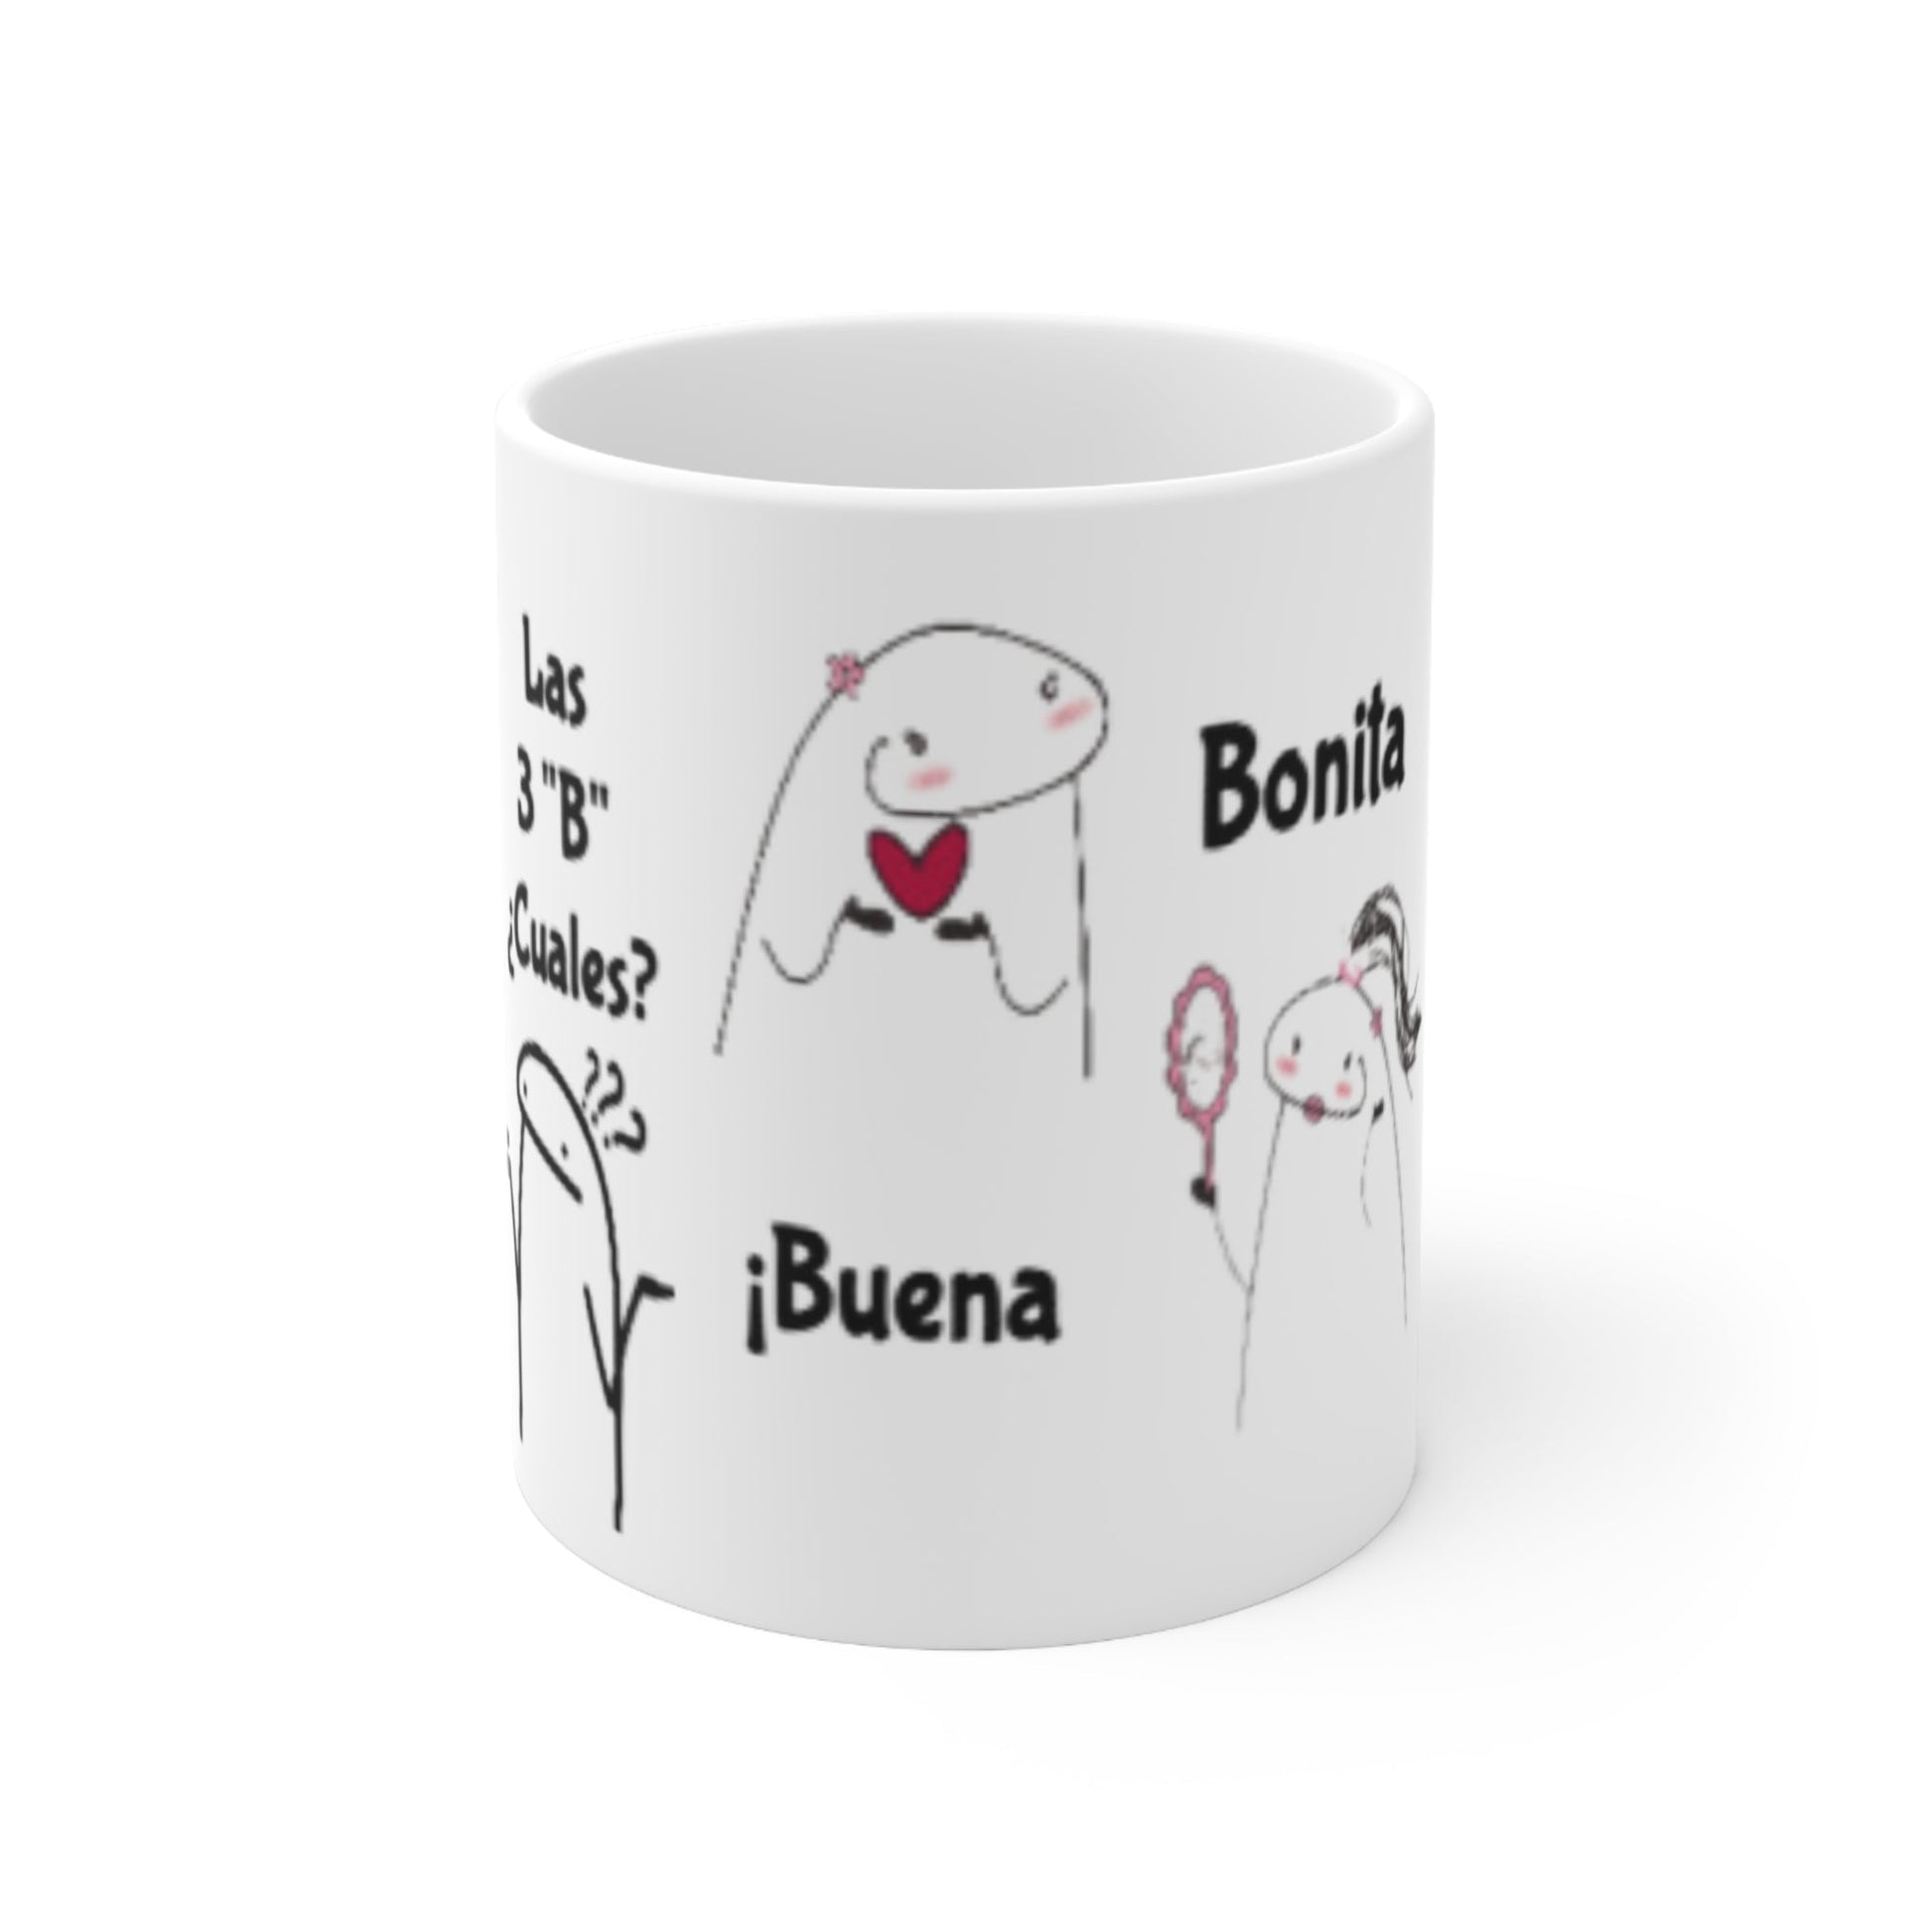 Buena, Bonita y Brava Mug - Personalizados - Crafts & Sweet Creations